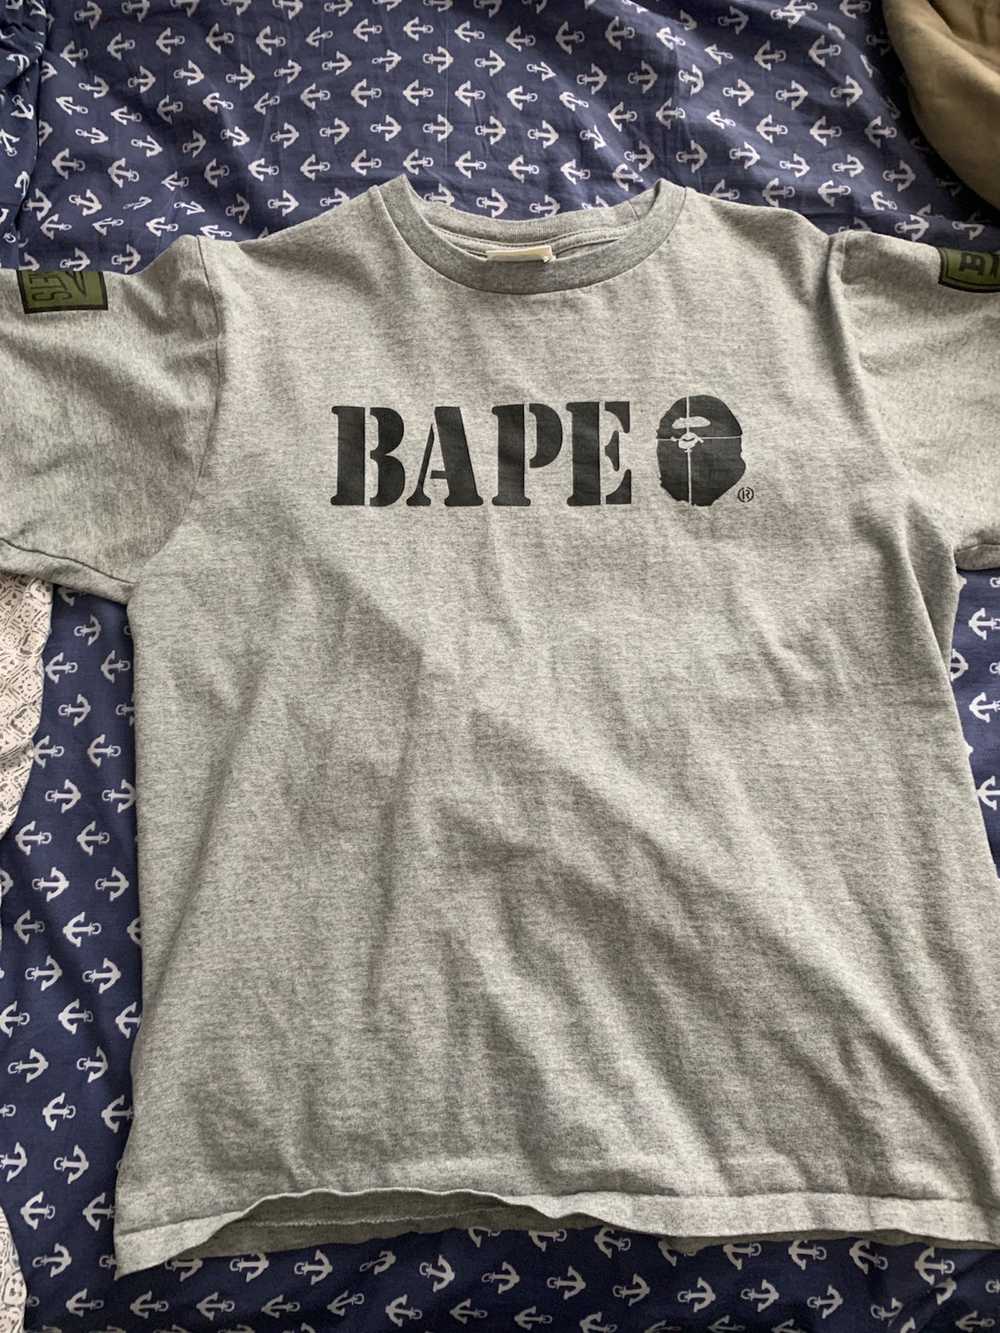 Bape Bape tee shirt - image 1